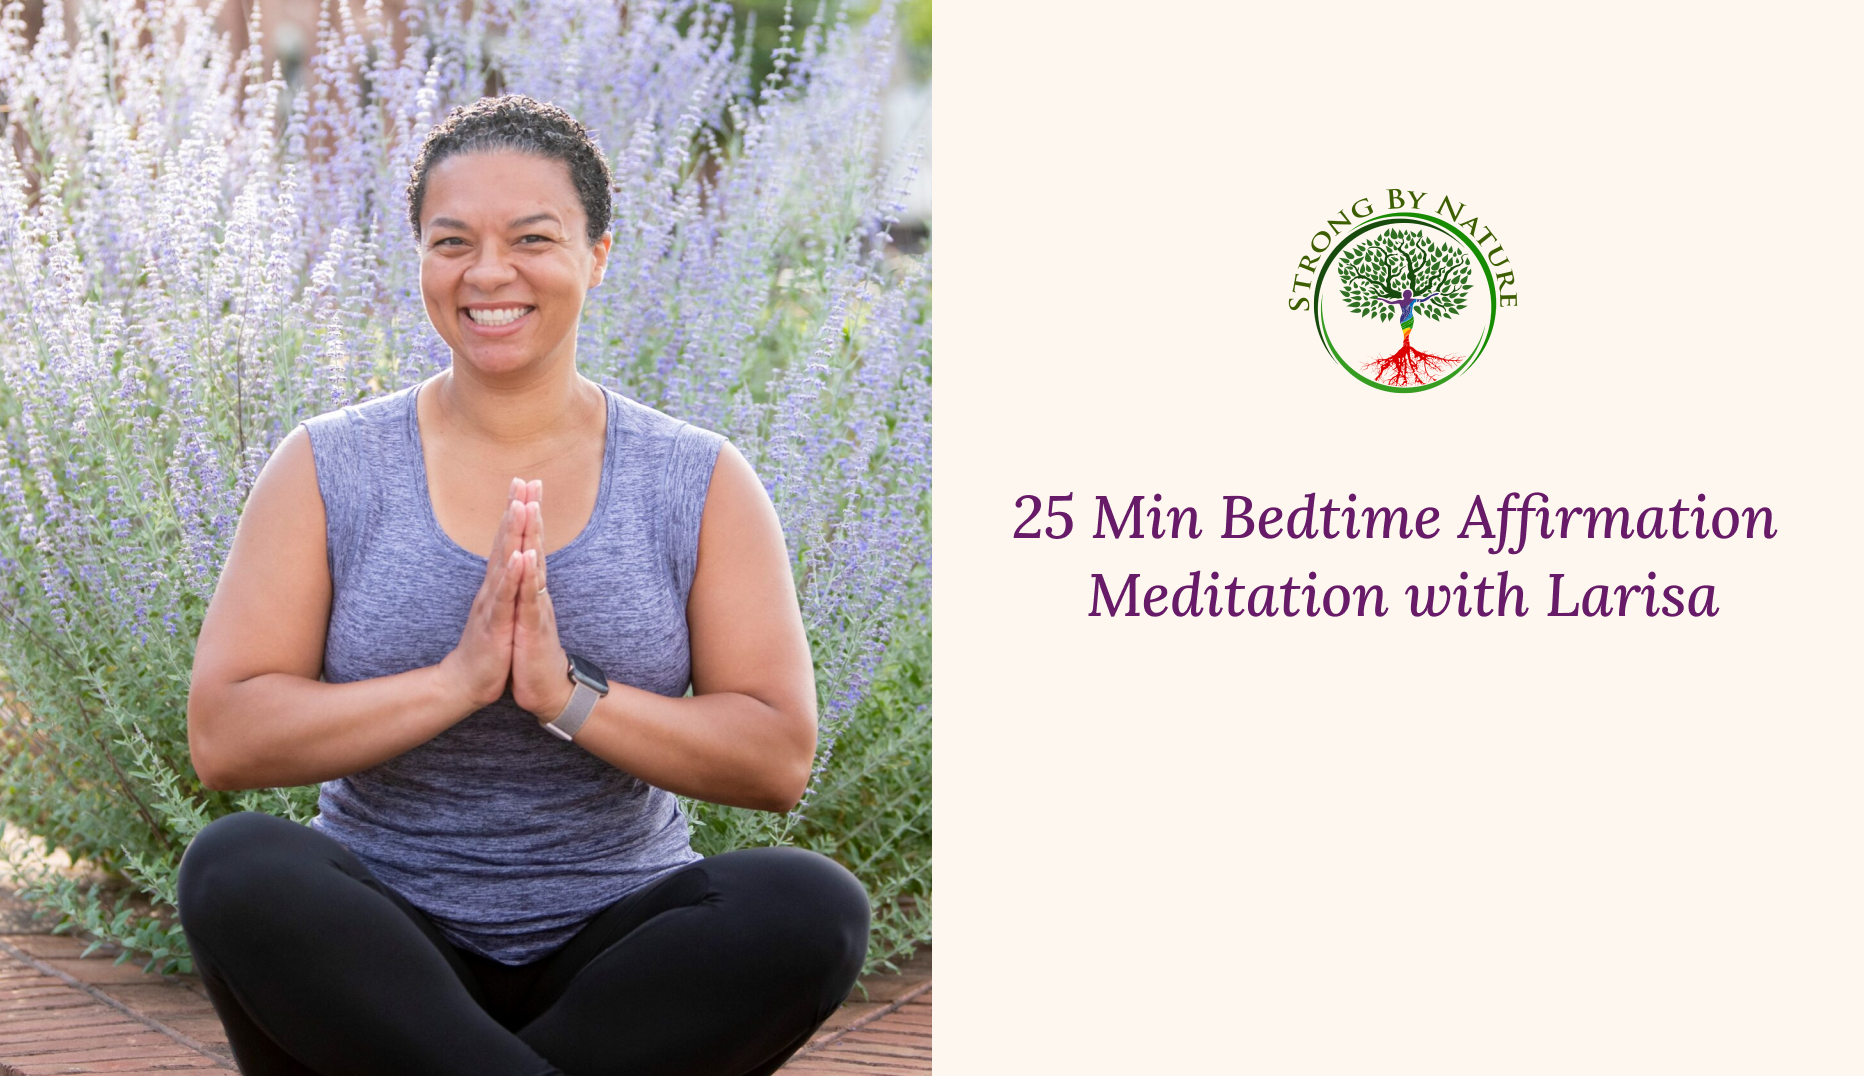 25 Min Bedtime Affirmation Meditation with Larisa